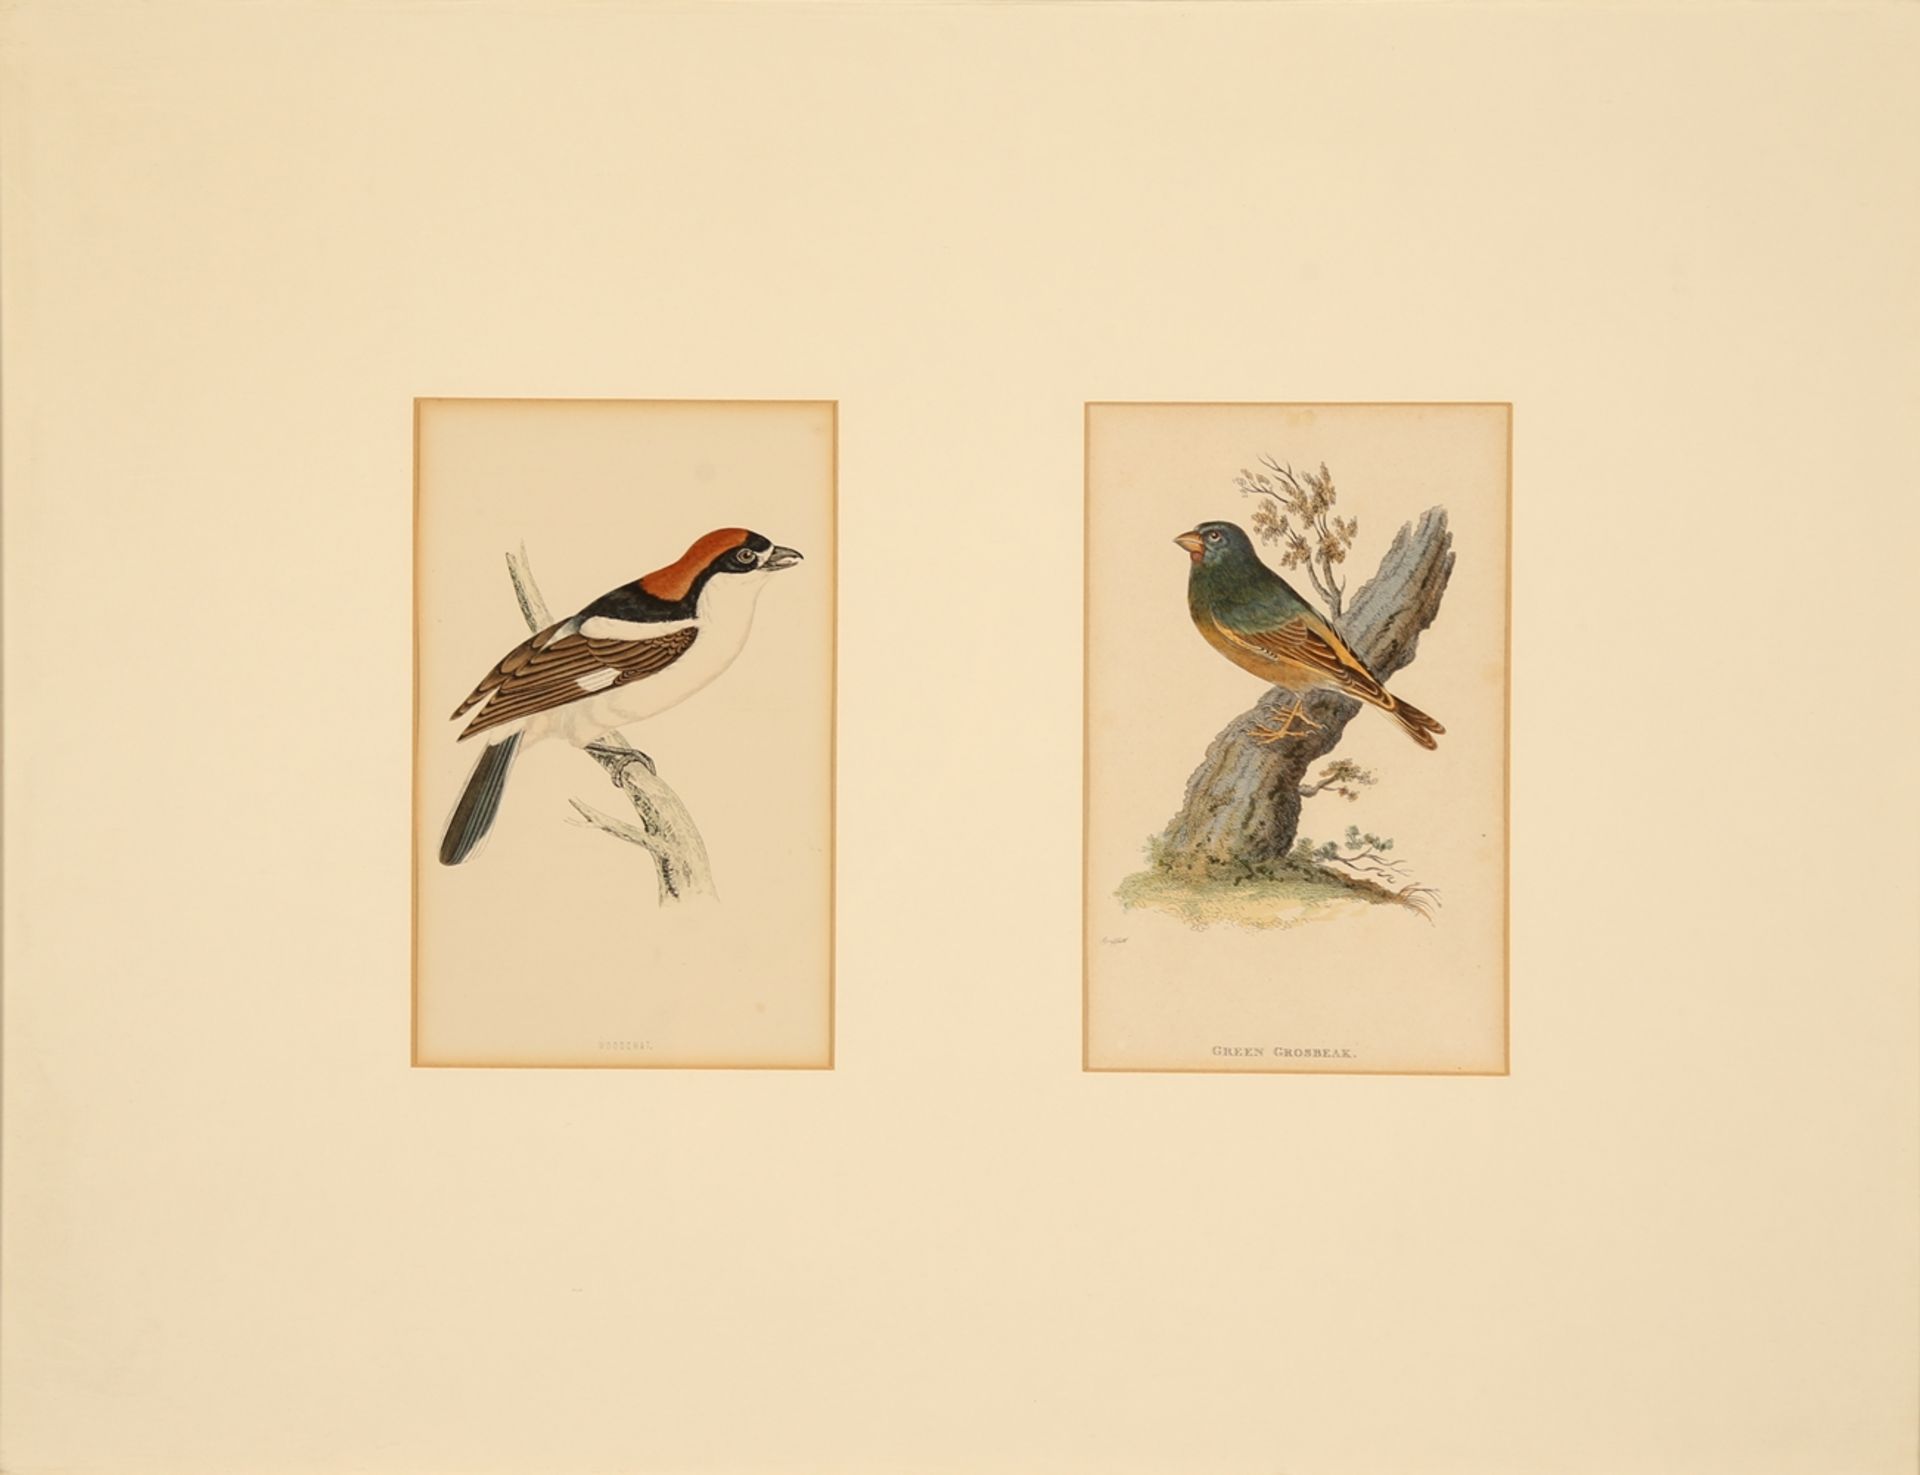 Vögel. 6 Farbholzstiche (in 5 Rahmen) von Harris, London 1870 aus 'A History of British Birds'. Ca. - Image 5 of 5